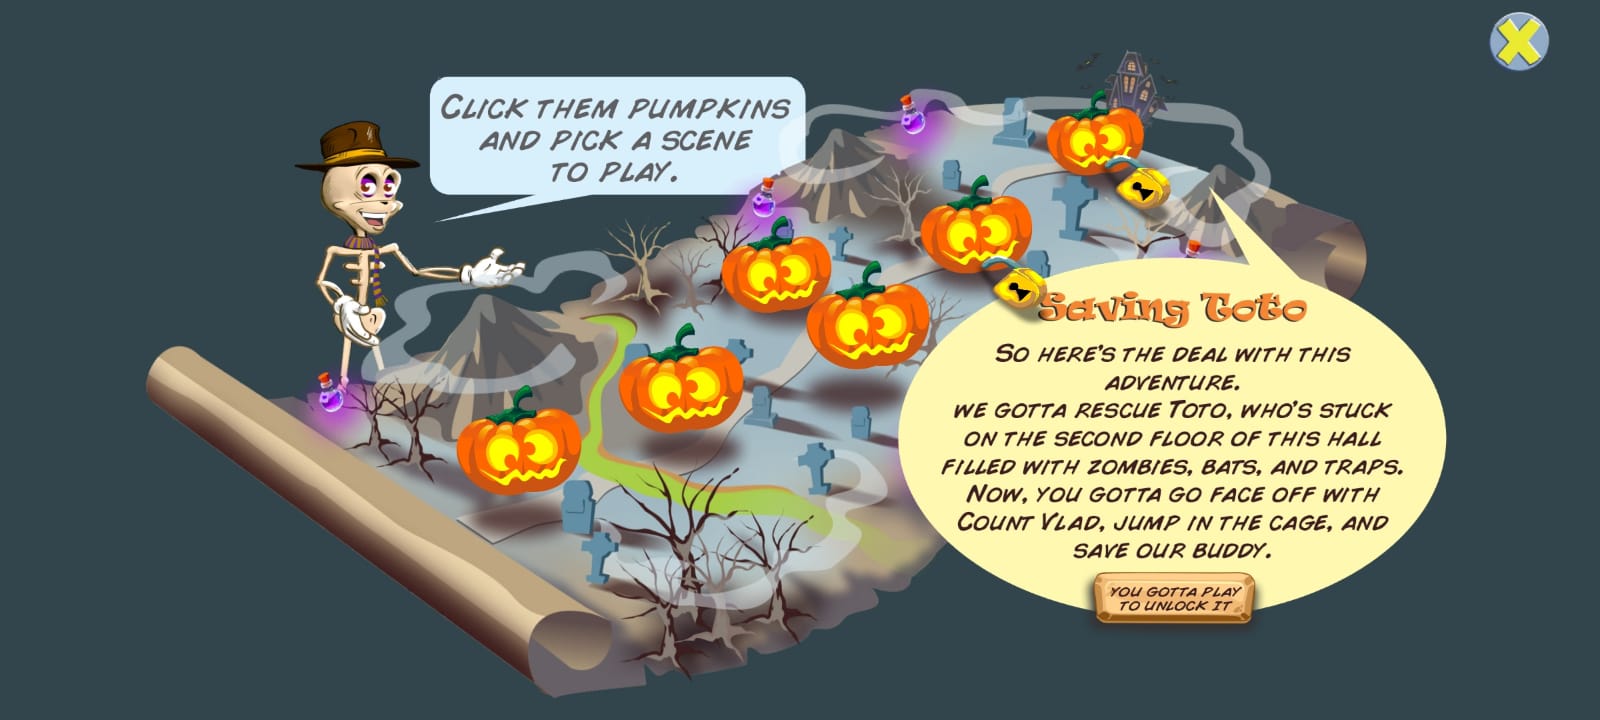 Télécharger Pumpkins Quest pour Android gratuit.